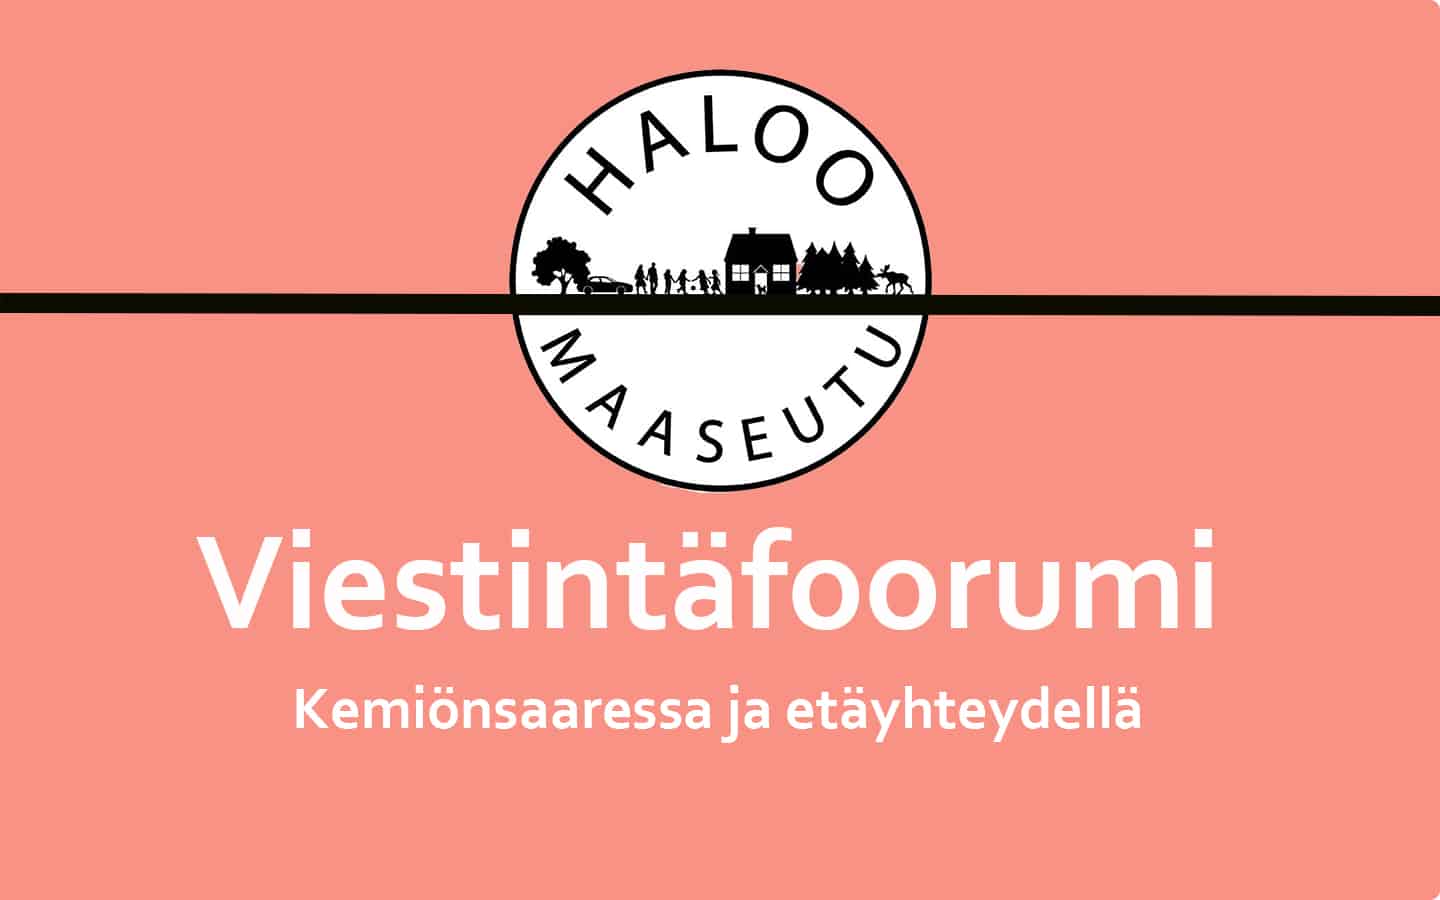 Viestintäfoorumista kertova kuva, jossa on Haloo maaseutu -hankkeen logo.